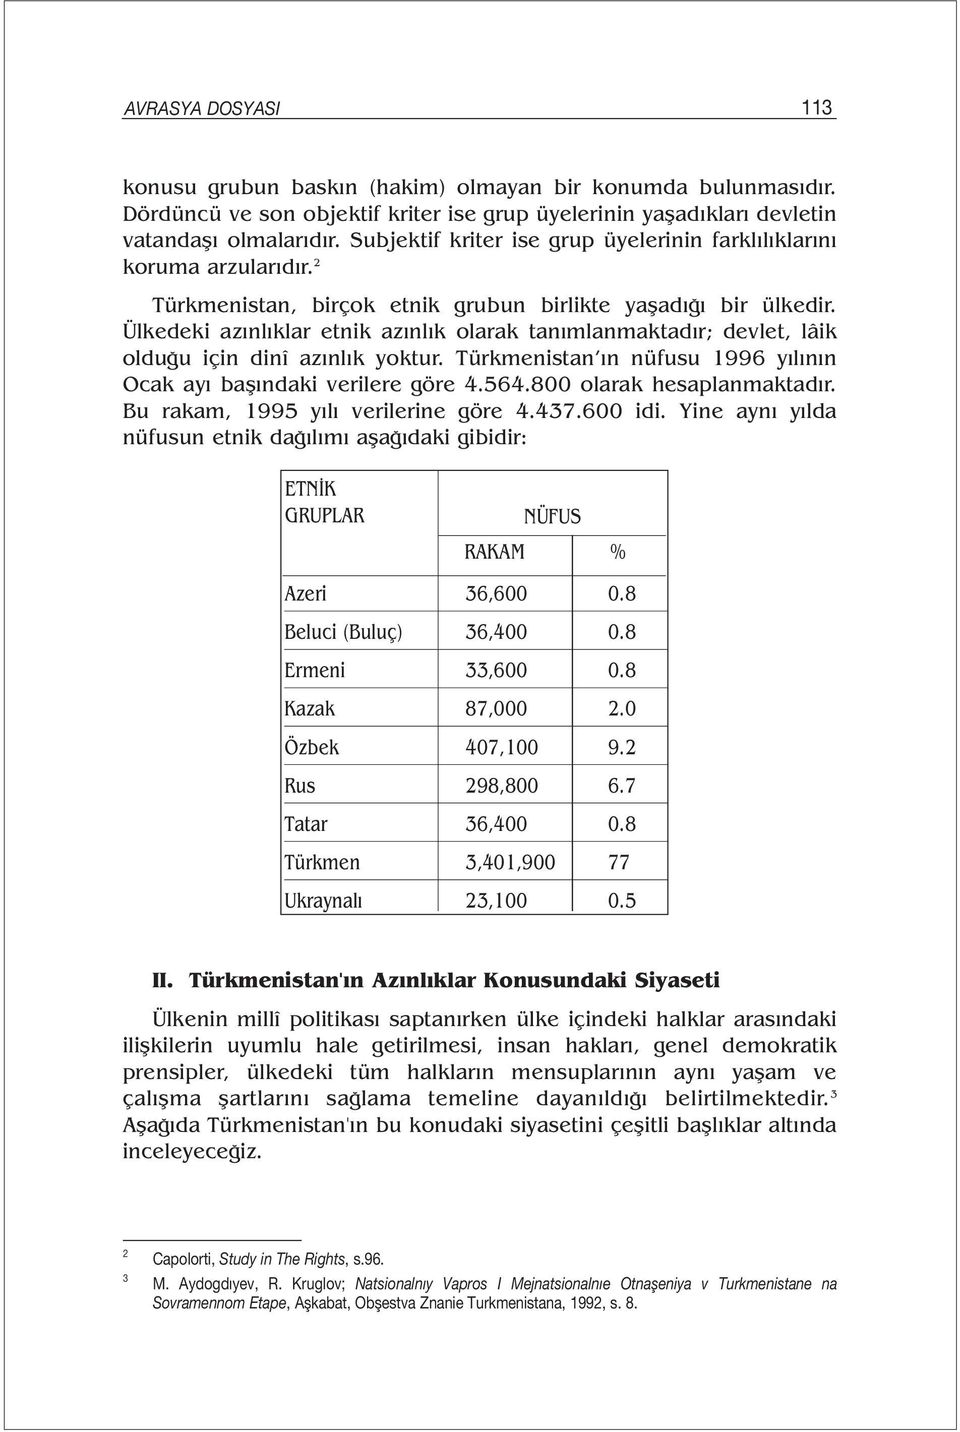 Ülkedeki azınlıklar etnik azınlık olarak tanımlanmaktadır; devlet, lâik olduğu için dinî azınlık yoktur. Türkmenistan ın nüfusu 1996 yılının Ocak ayı başındaki verilere göre 4.564.